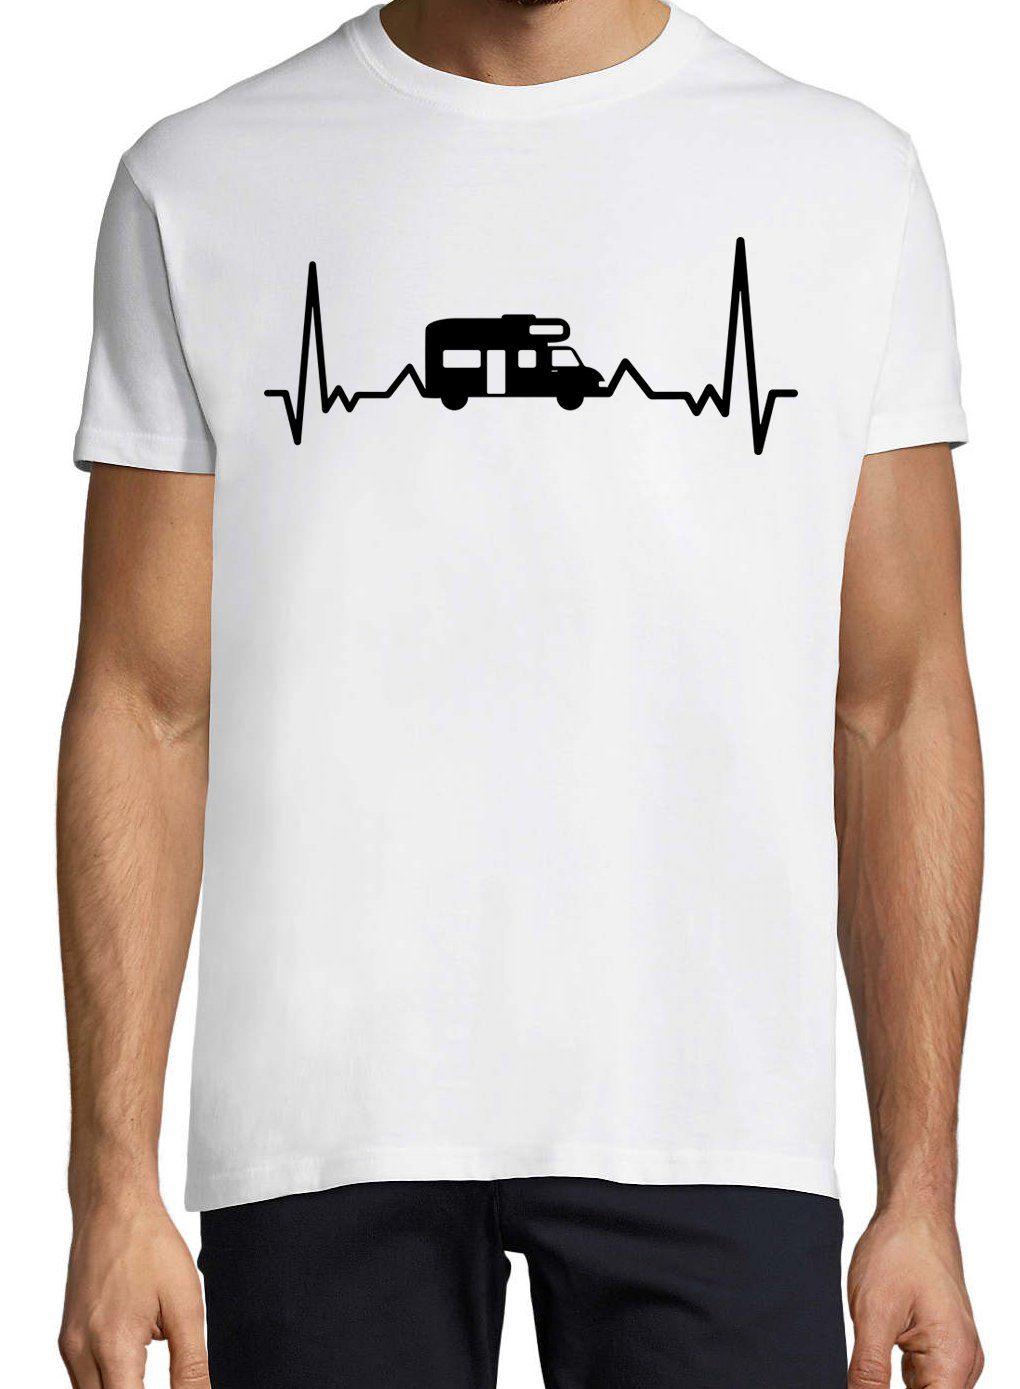 Weiß Herren Designz Camping Shirt Youth mit lutsigem Frondruck T-Shirt Herzschlag